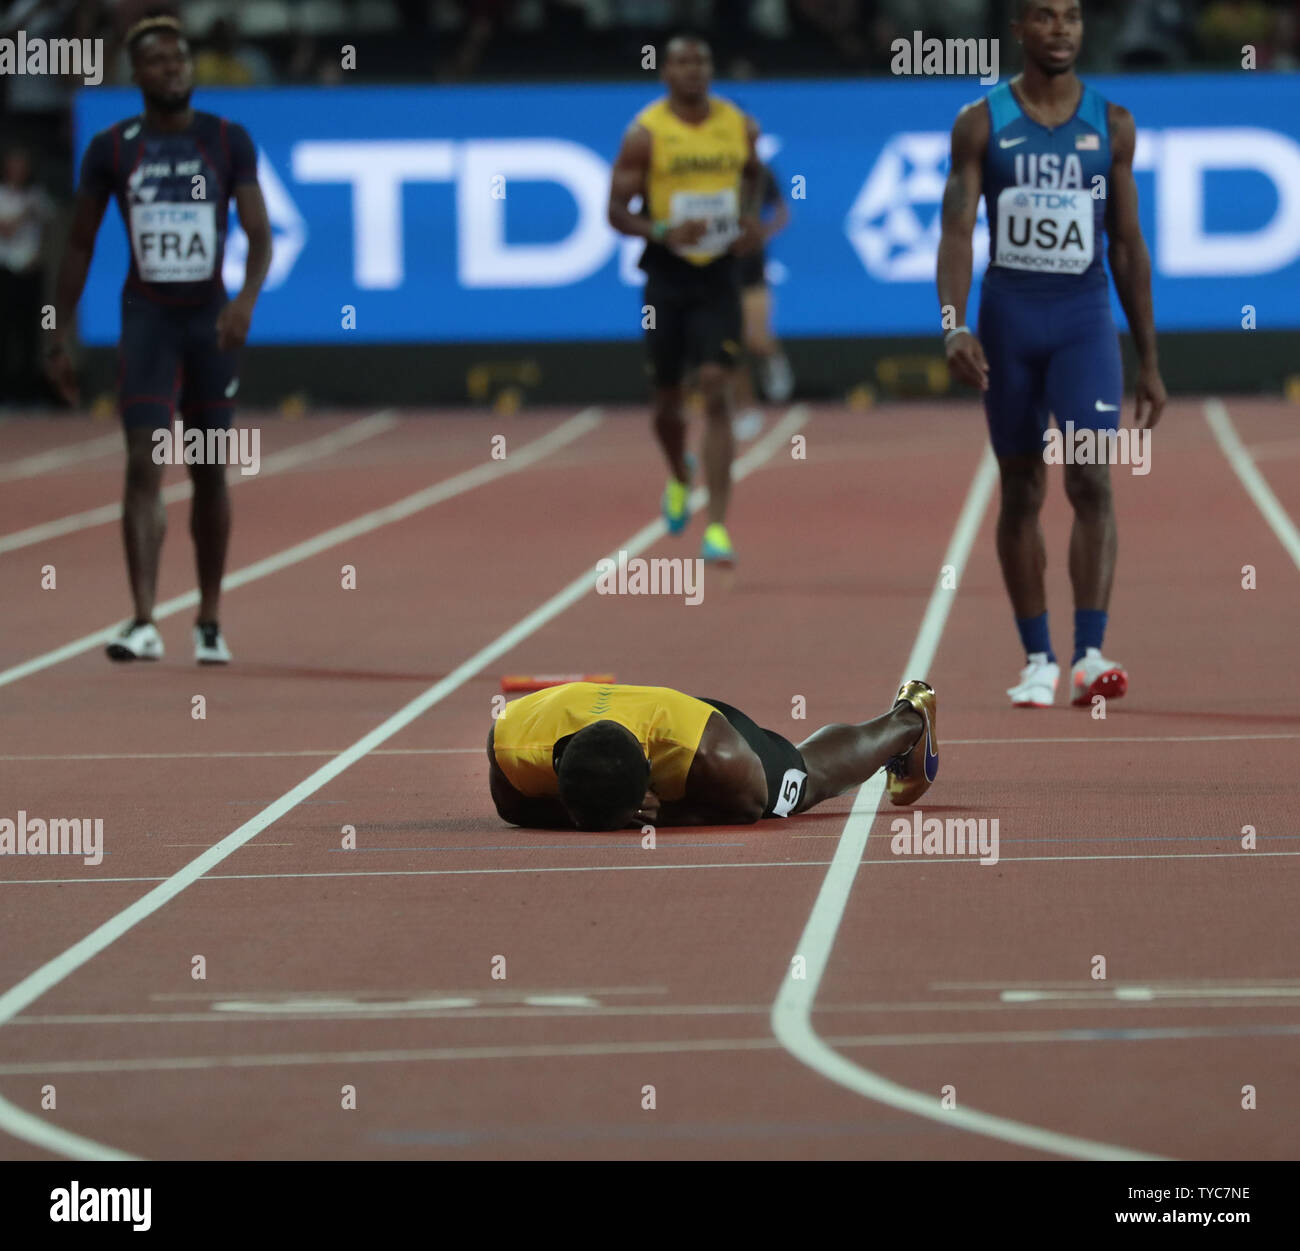 Jamaikaner Usain Bolt liegt in Schmerzen während der Herren 4x100-Meter-Staffel bei der IAAF Leichtathletik WM 2017 im Olympischen Stadion, London Am 12. August 2017. Schraube eng und konnte in seinem letzten Rennen vor dem Ruhestand zu beenden. Foto von Hugo Philpott/UPI Stockfoto